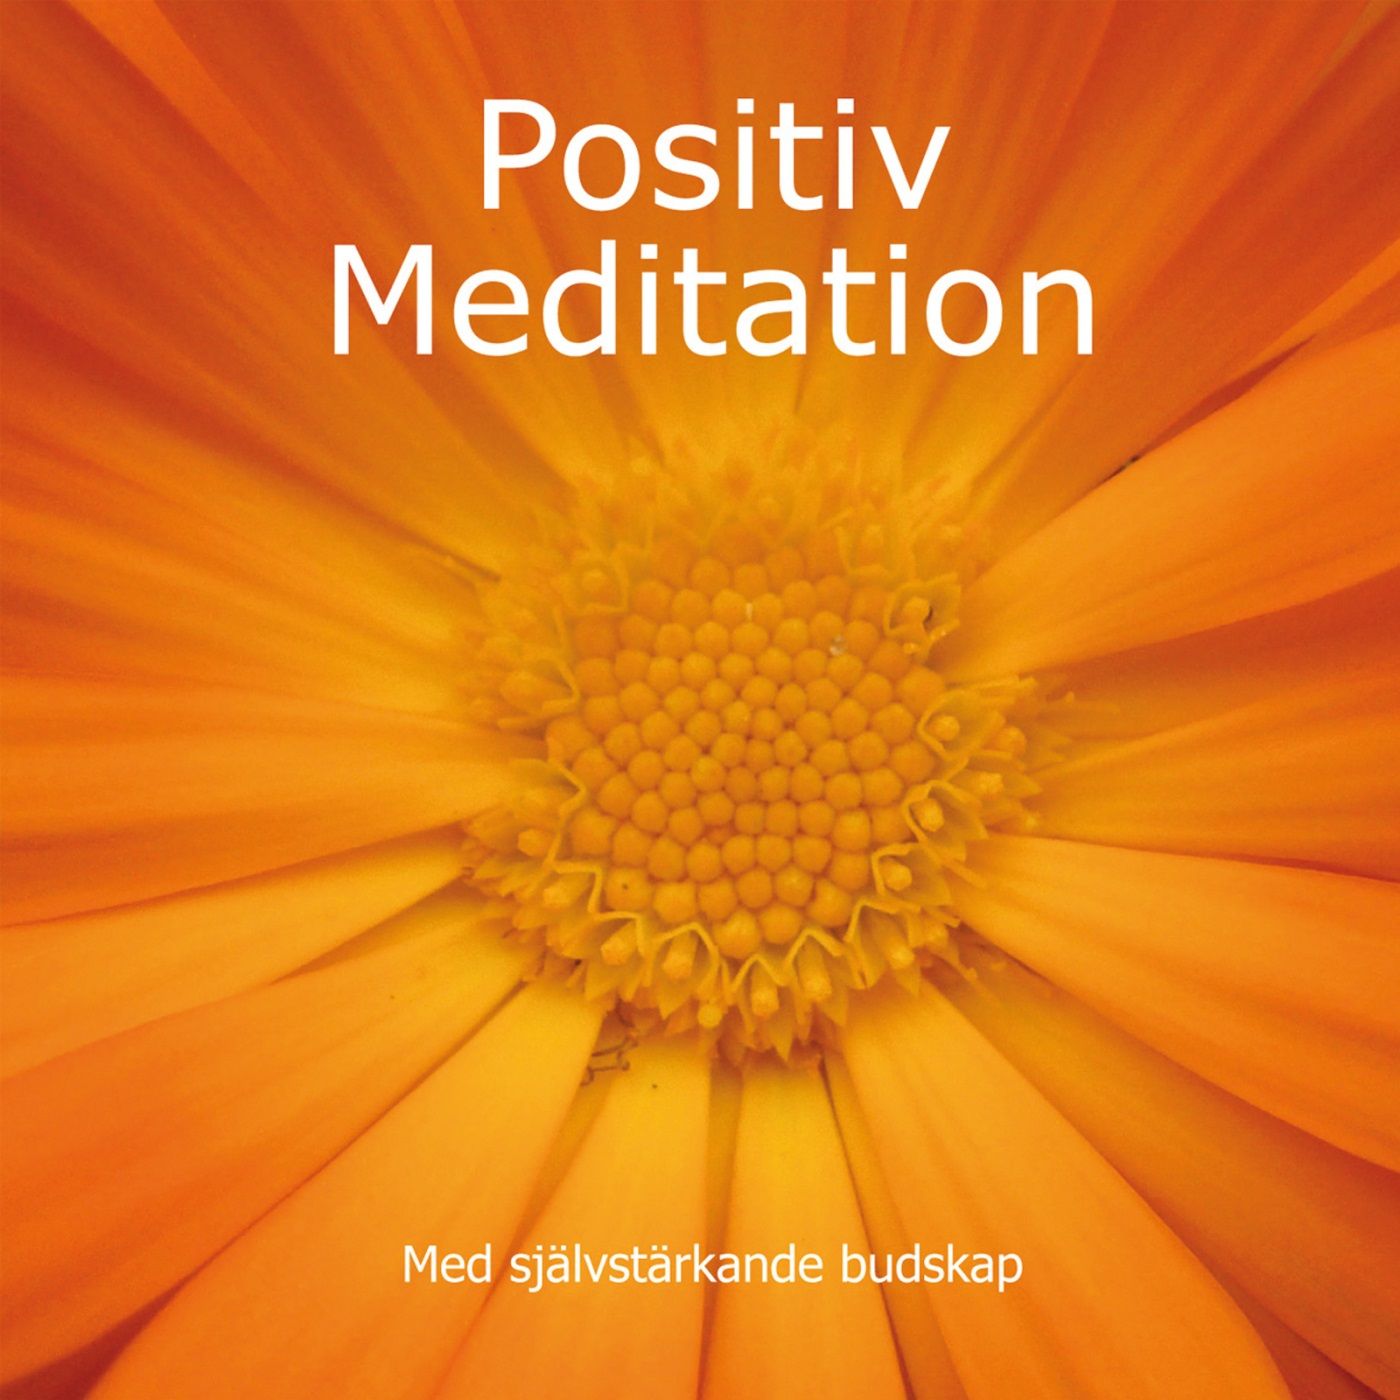 Positiv Meditation med självstärkande budskap, audiobook by Mia de Neergaard